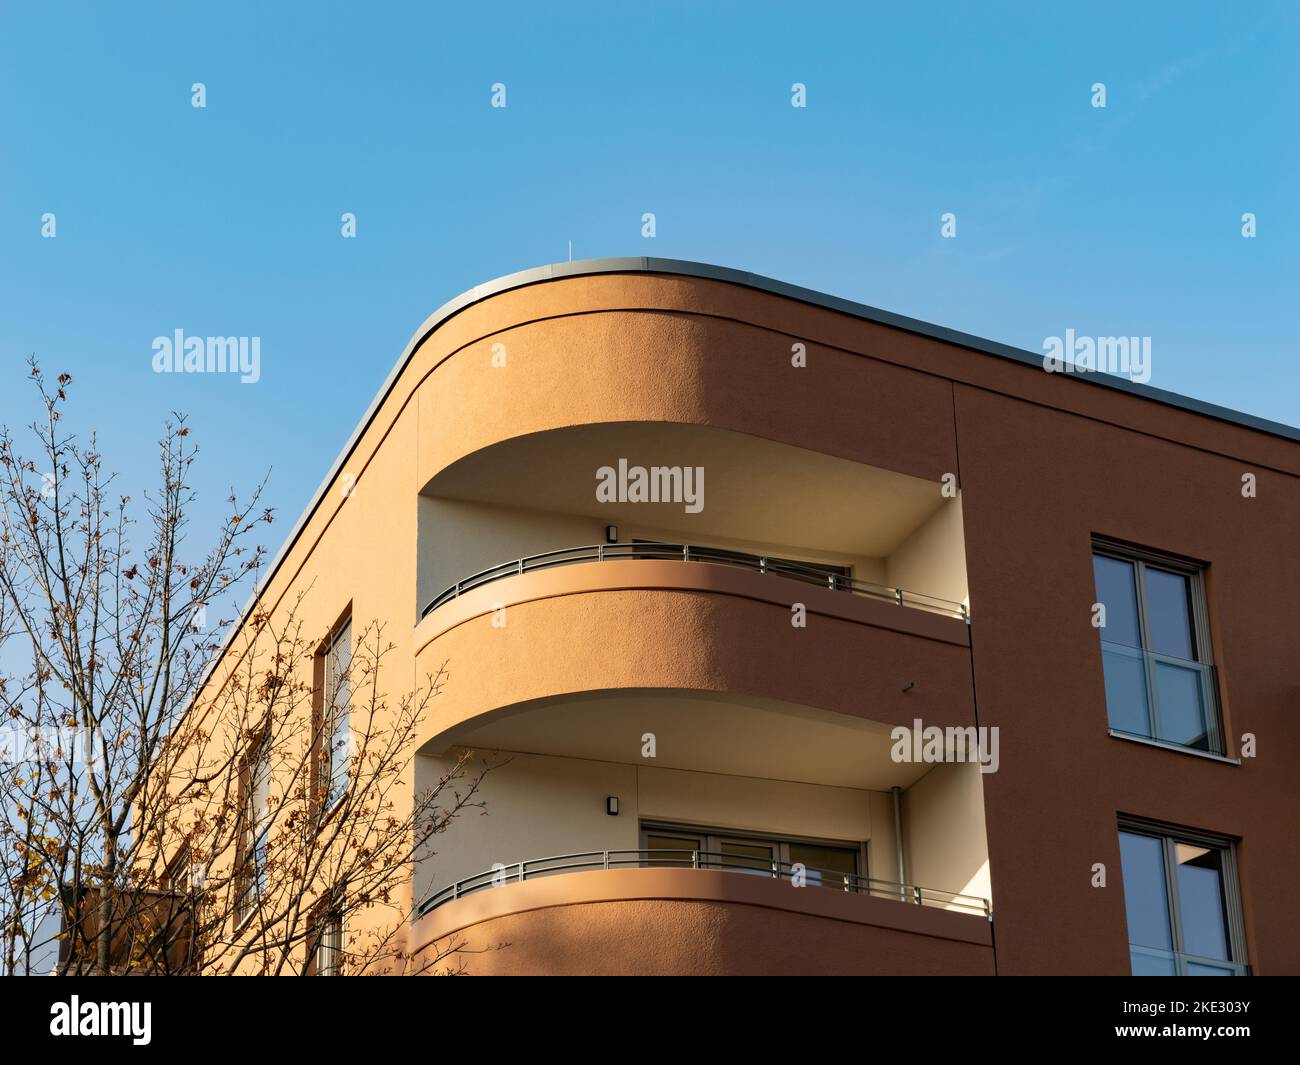 Architettura moderna con balcone. La facciata e' di forma rotonda all'angolo dell'edificio. L'esterno è di colore marrone. Primo piano del progetto. Foto Stock